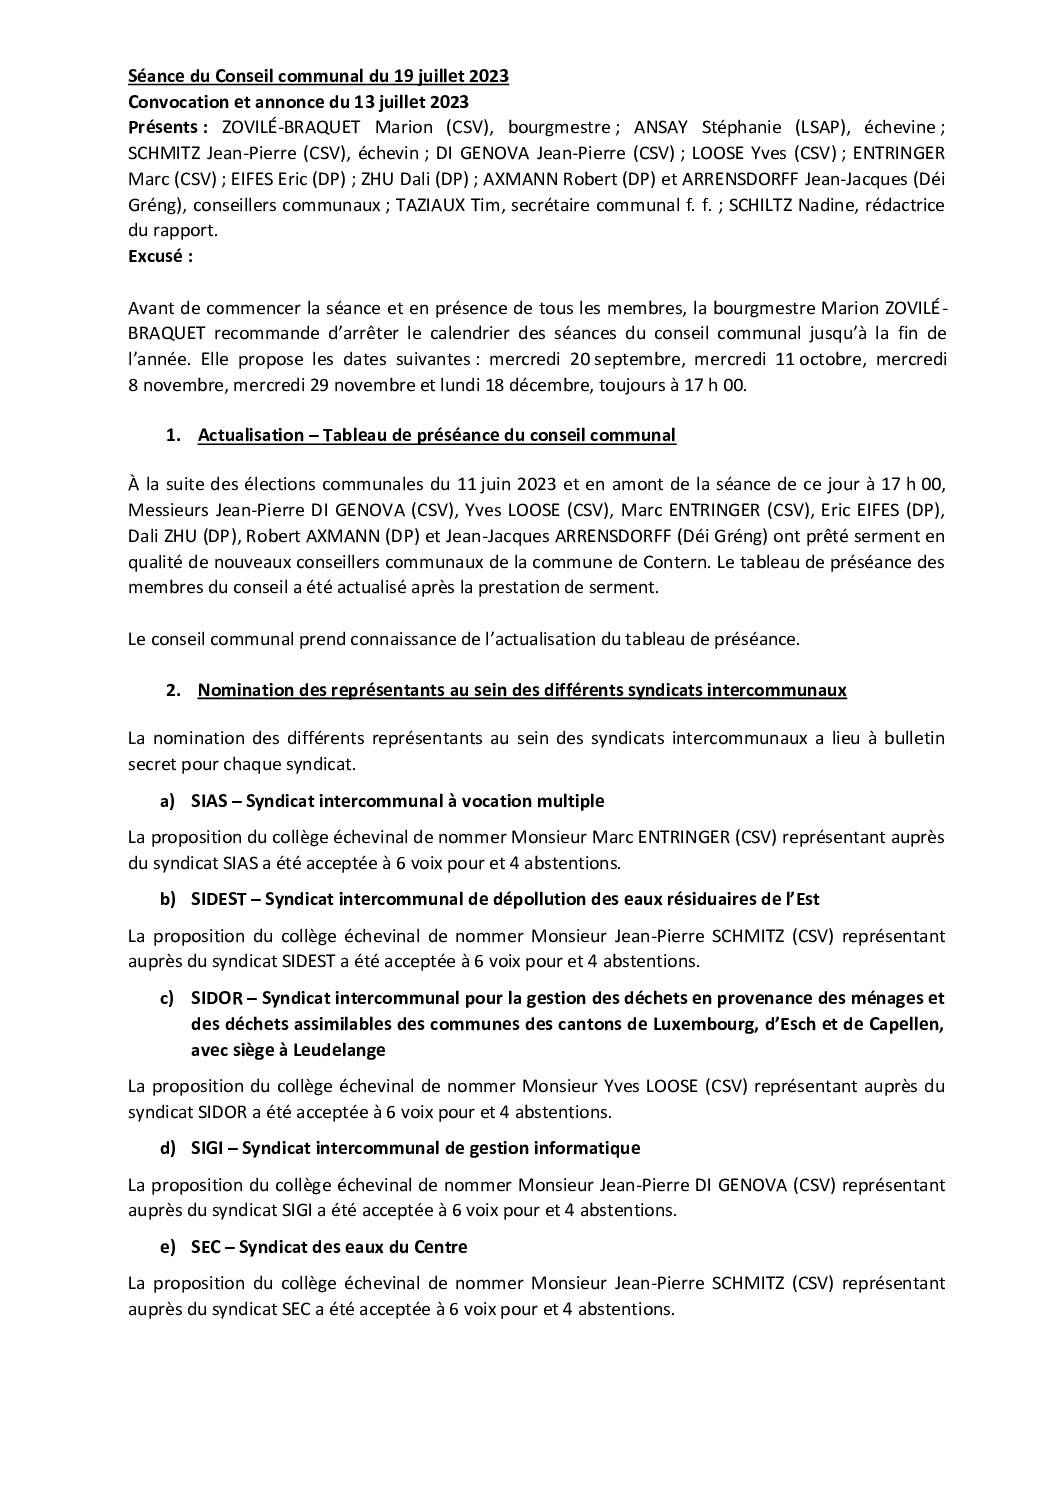 2023-07-19-Rapport-du-Conseil-communal